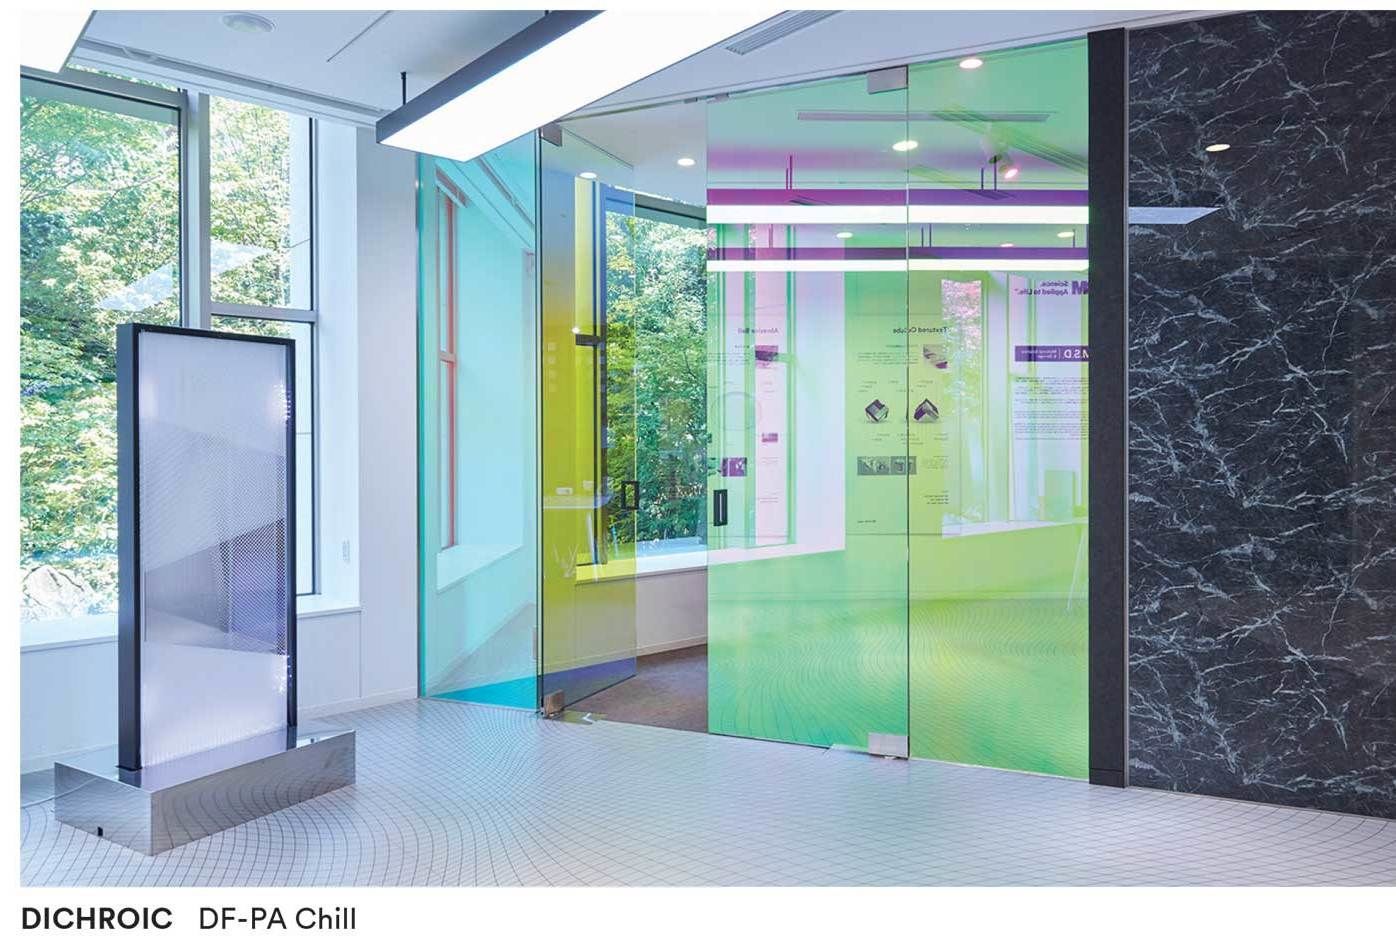 วัสดุตกแต่งกระจก DICHROIC ของ 3M™ เป็นวิธีการที่โดดเด่น ในการเปลี่ยนแปลงสีสันกับพื้นผิวกระจกหลายชนิดภายในอาคาร